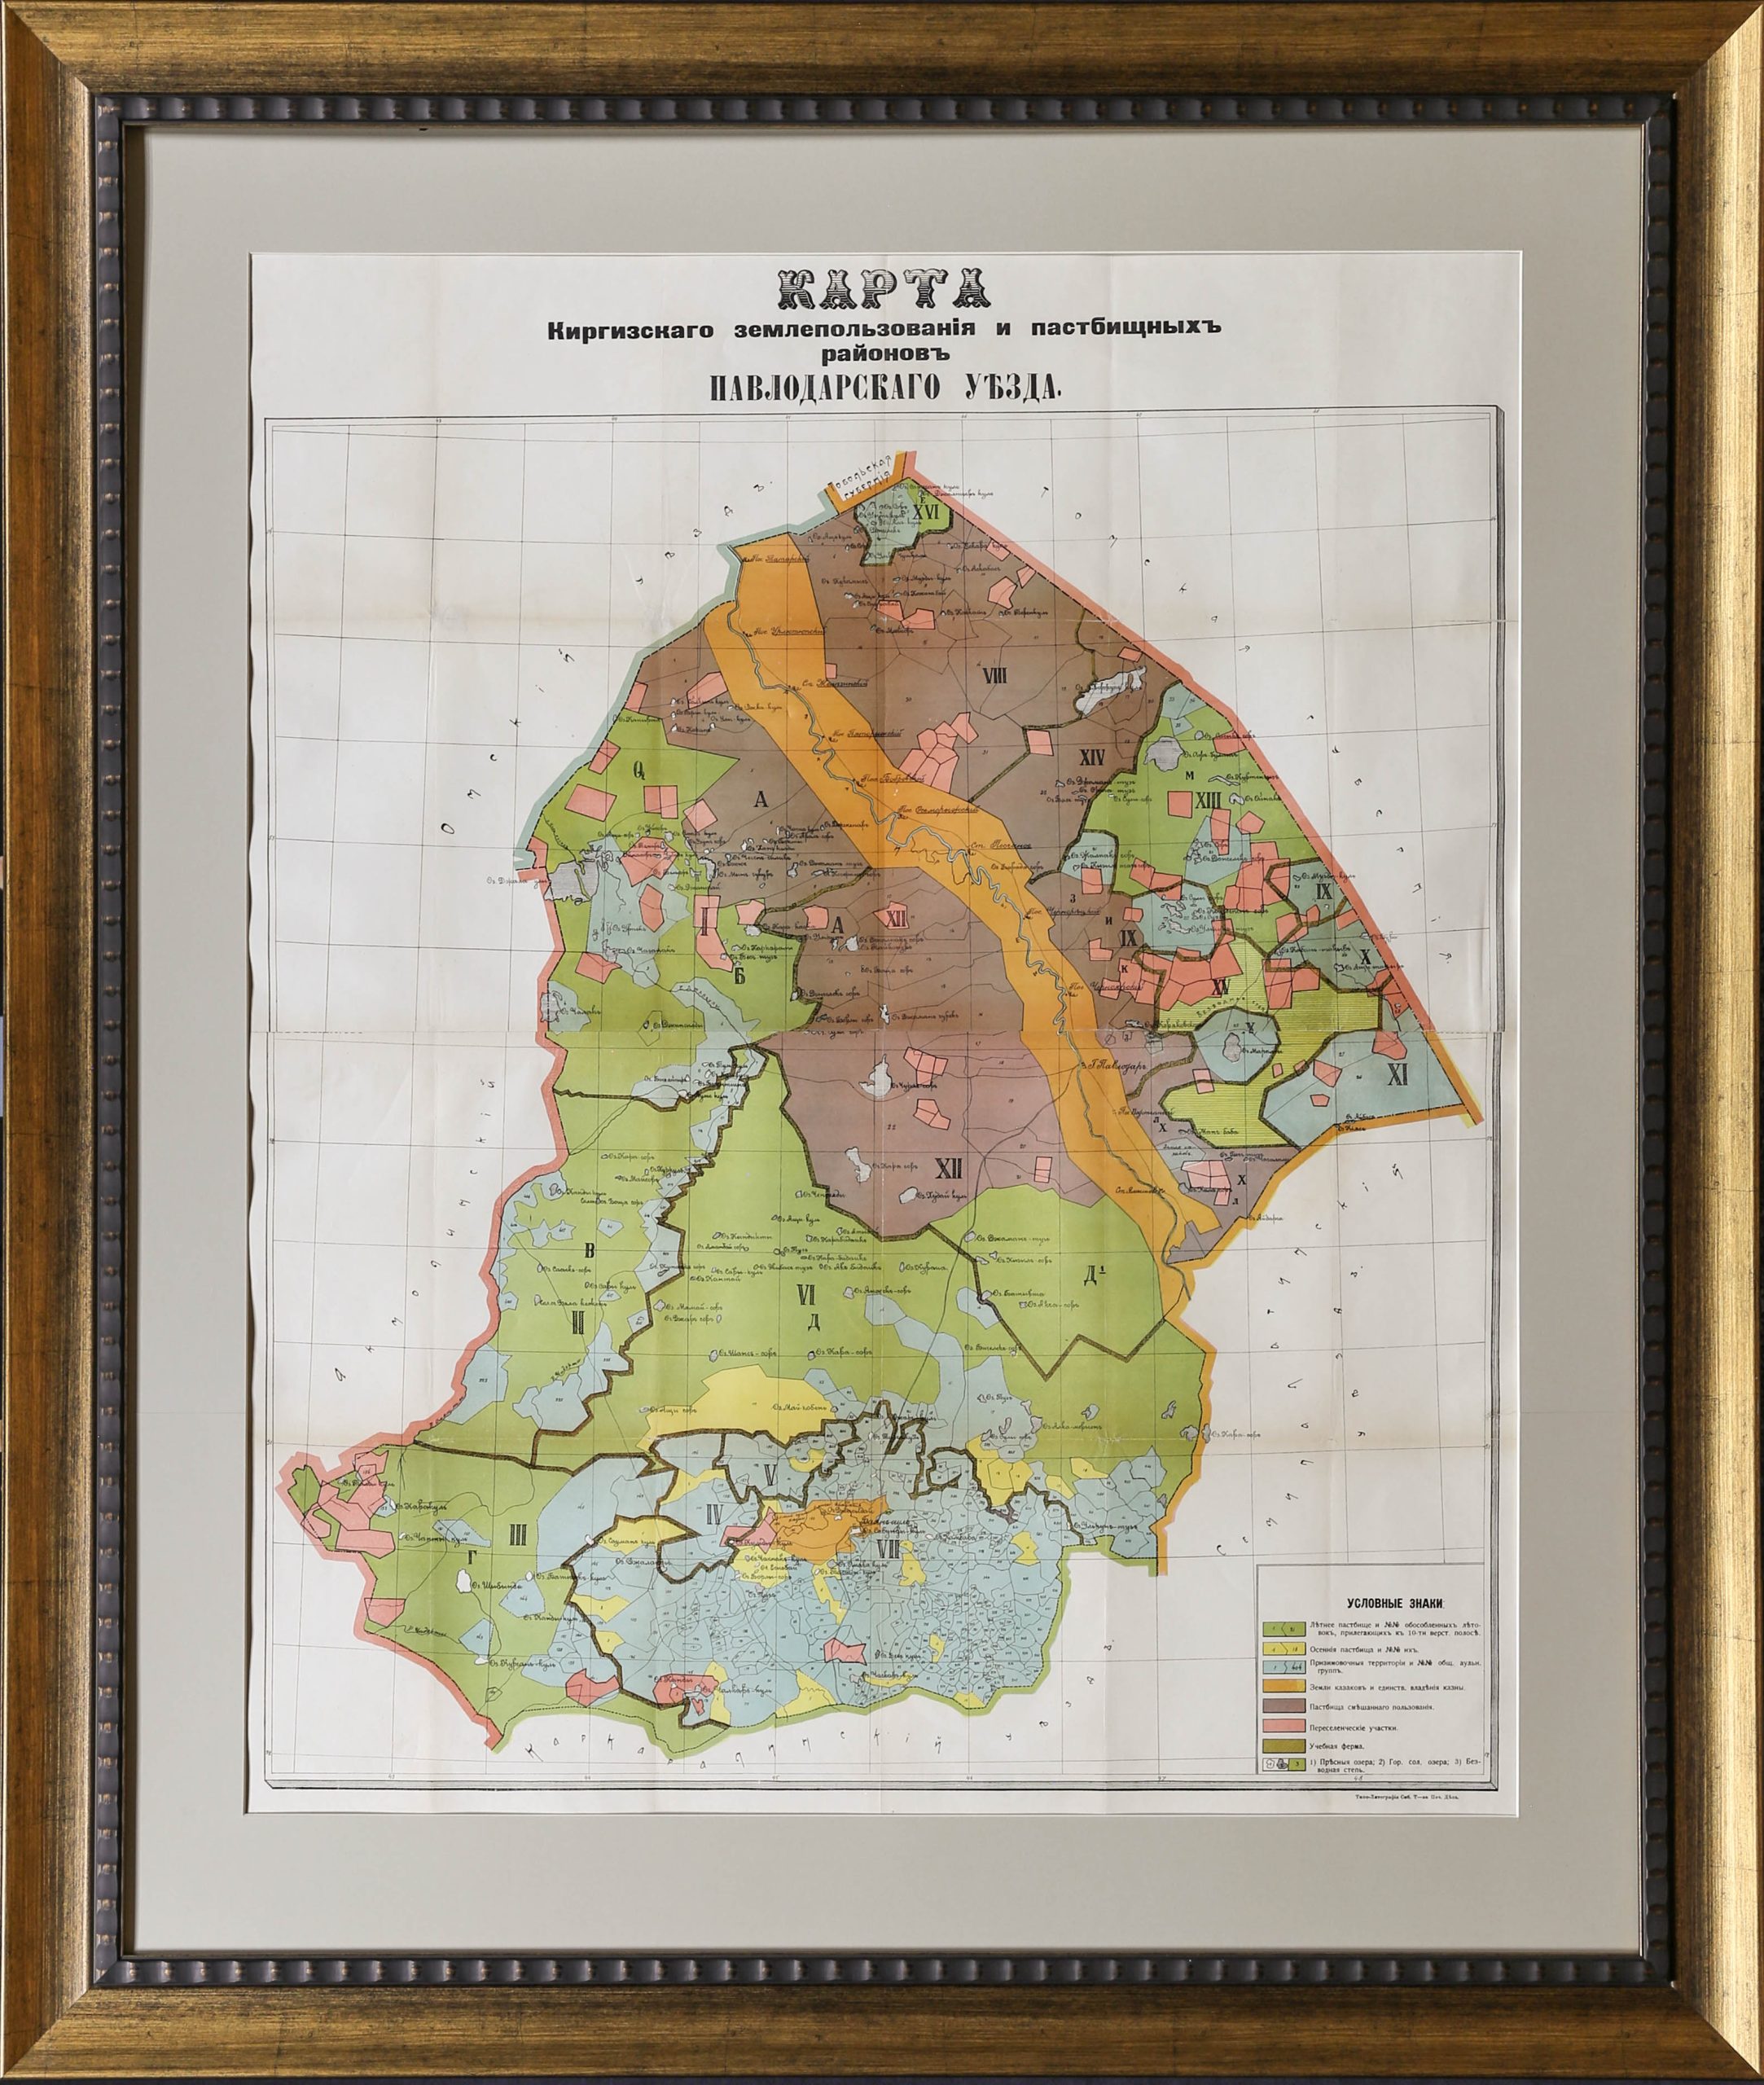 Купить антикварную карту (Карта Киргизского землепользования и пастбищных районов Павлодарского уезда)